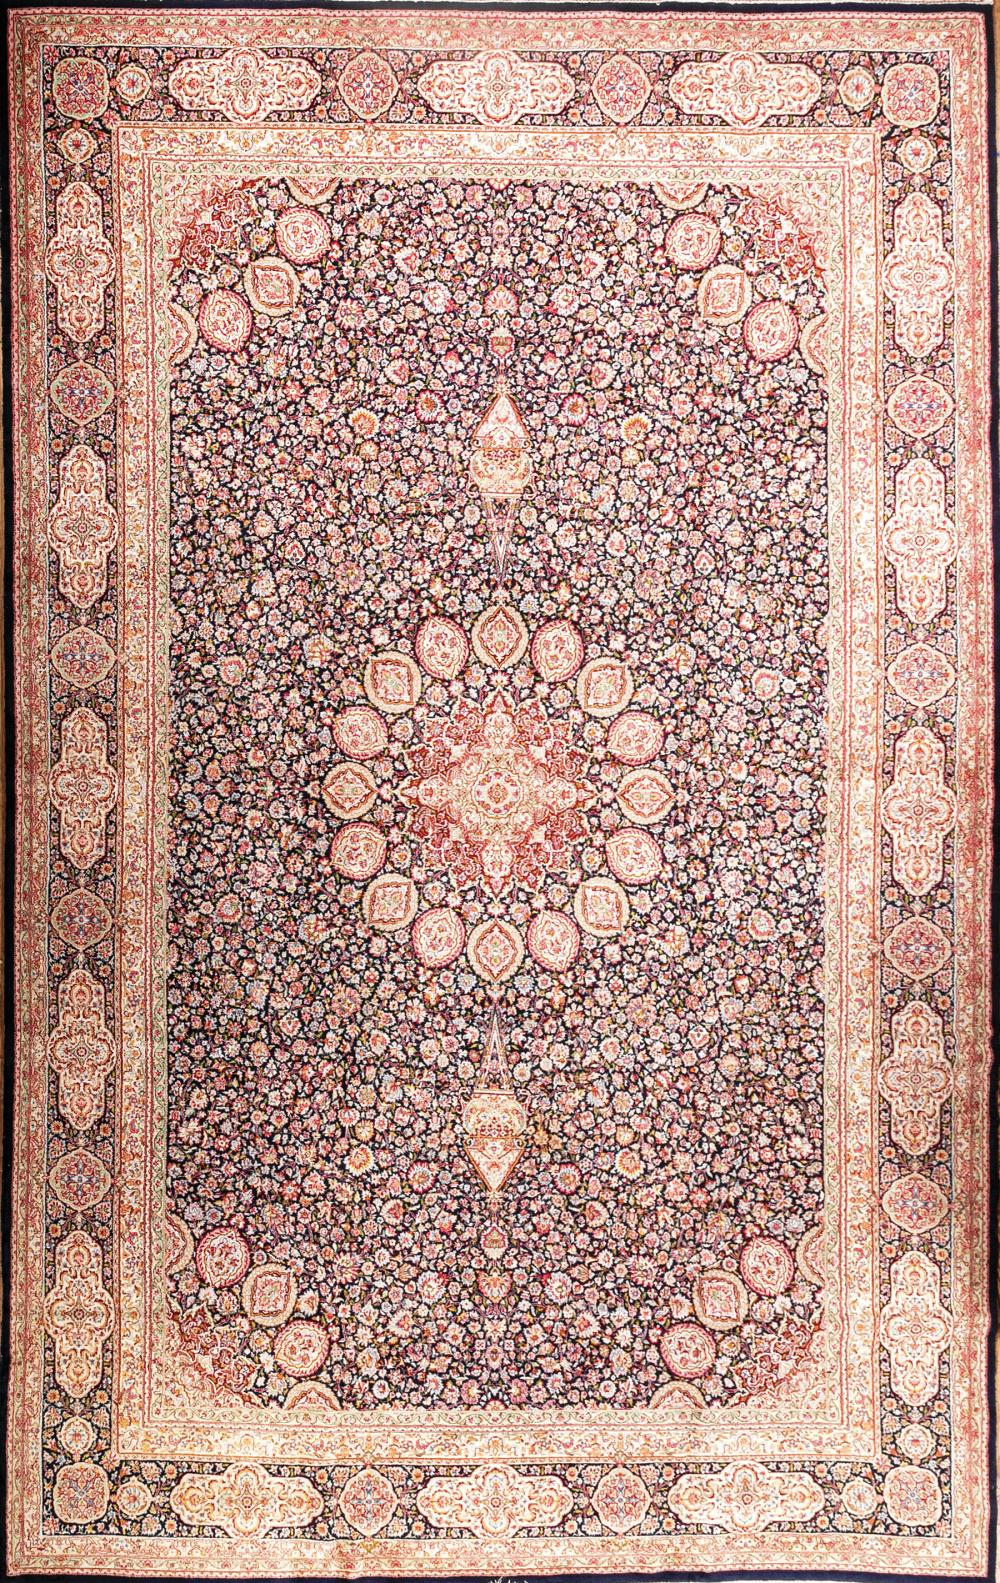 PERSIAN CARPETLarge Persian Carpet  31a69d